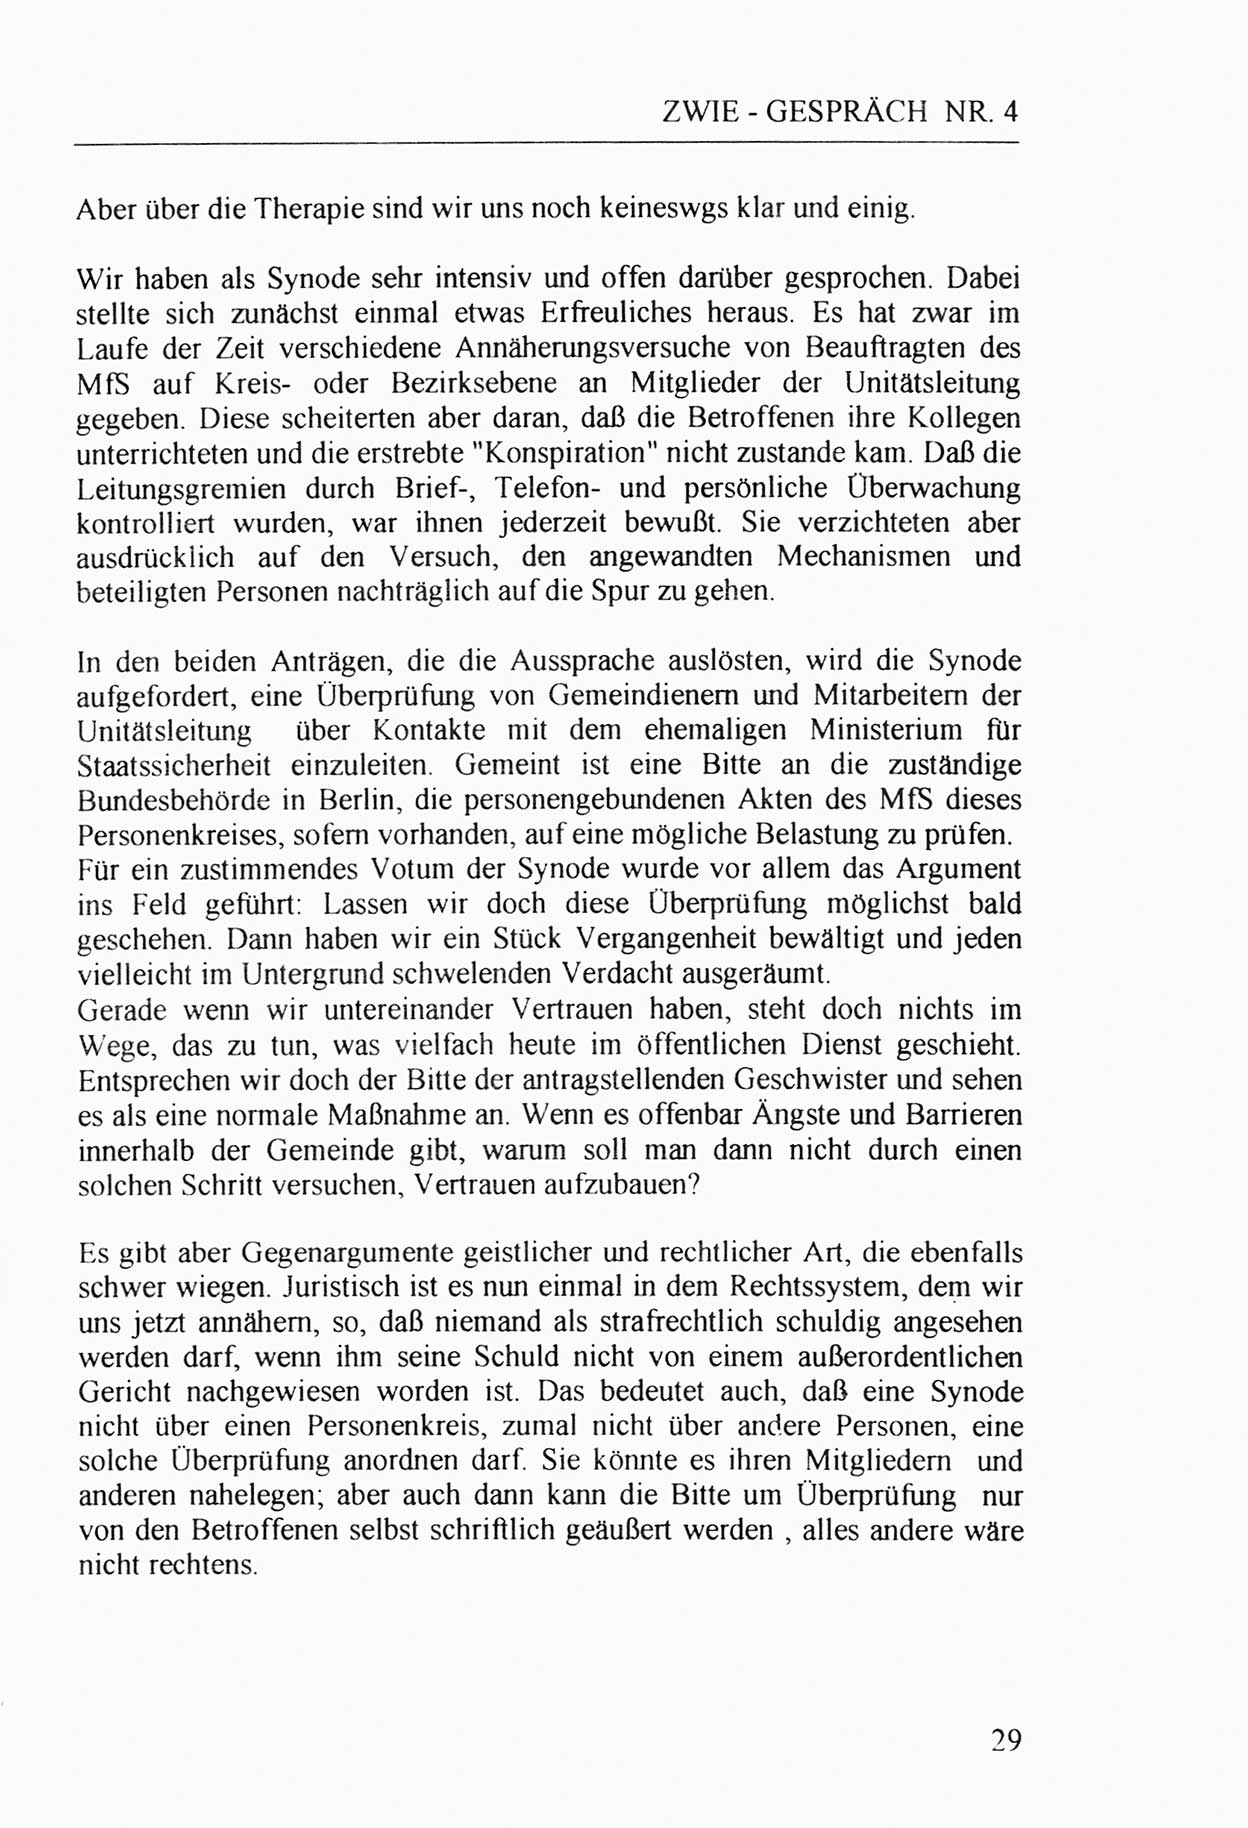 Zwie-Gespräch, Beiträge zur Aufarbeitung der Stasi-Vergangenheit [Deutsche Demokratische Republik (DDR)], Ausgabe Nr. 4, Berlin 1991, Seite 29 (Zwie-Gespr. Ausg. 4 1991, S. 29)